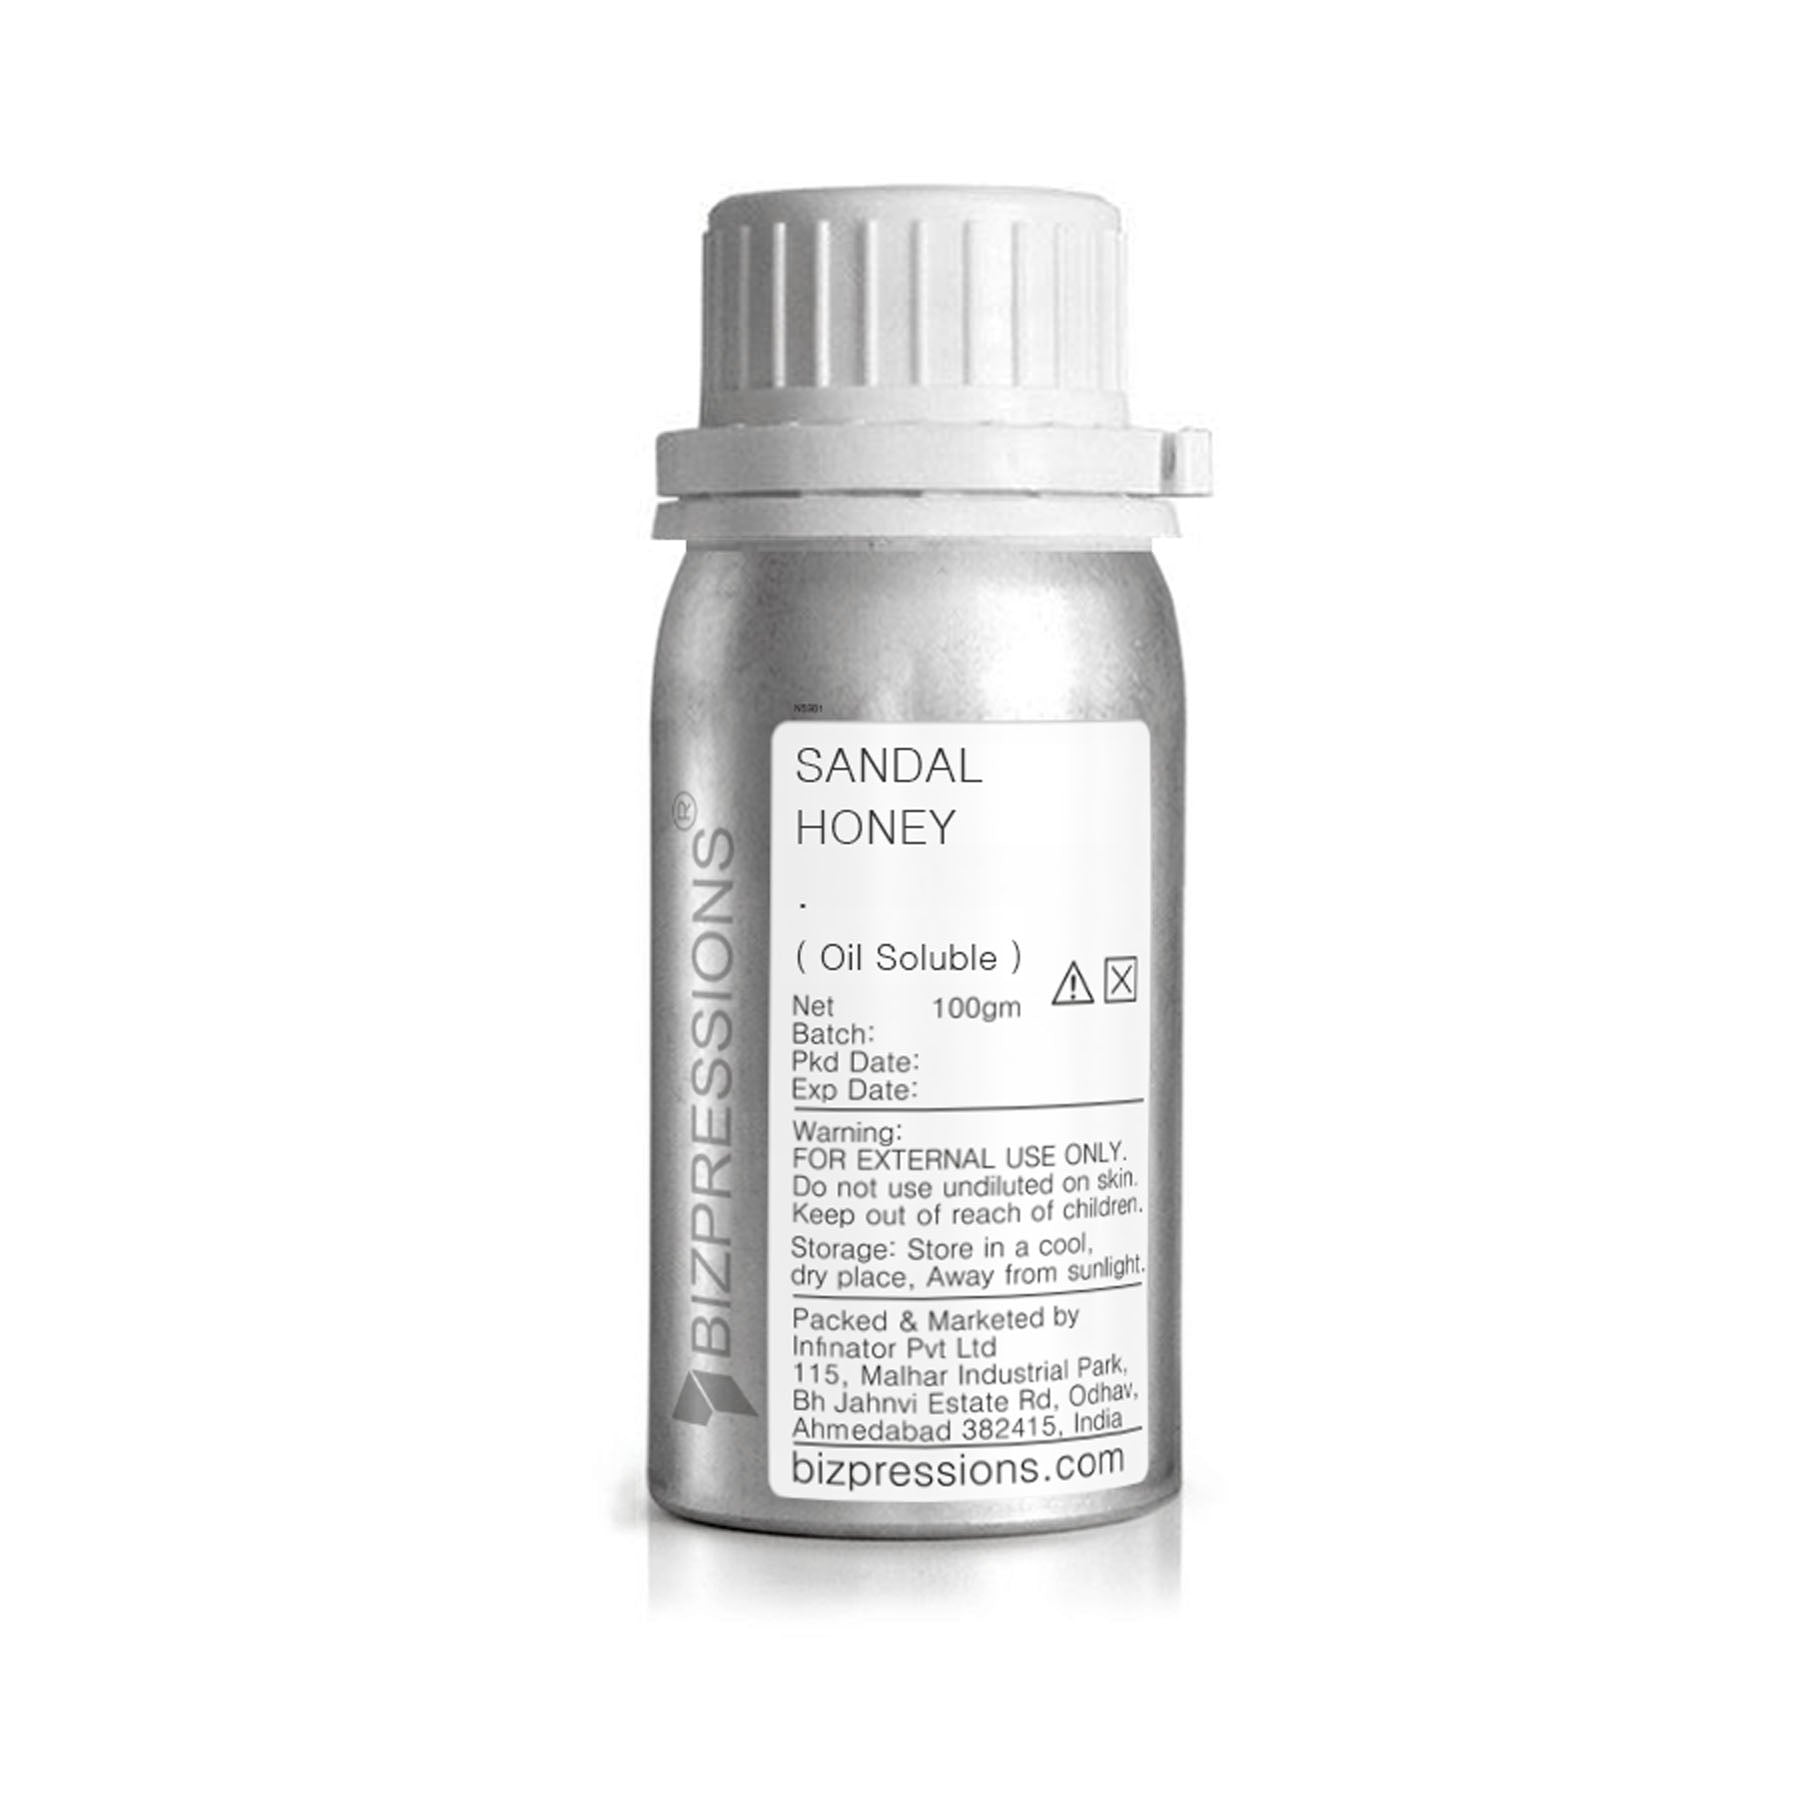 SANDAL HONEY - Fragrance ( Oil Soluble ) - 100 gm